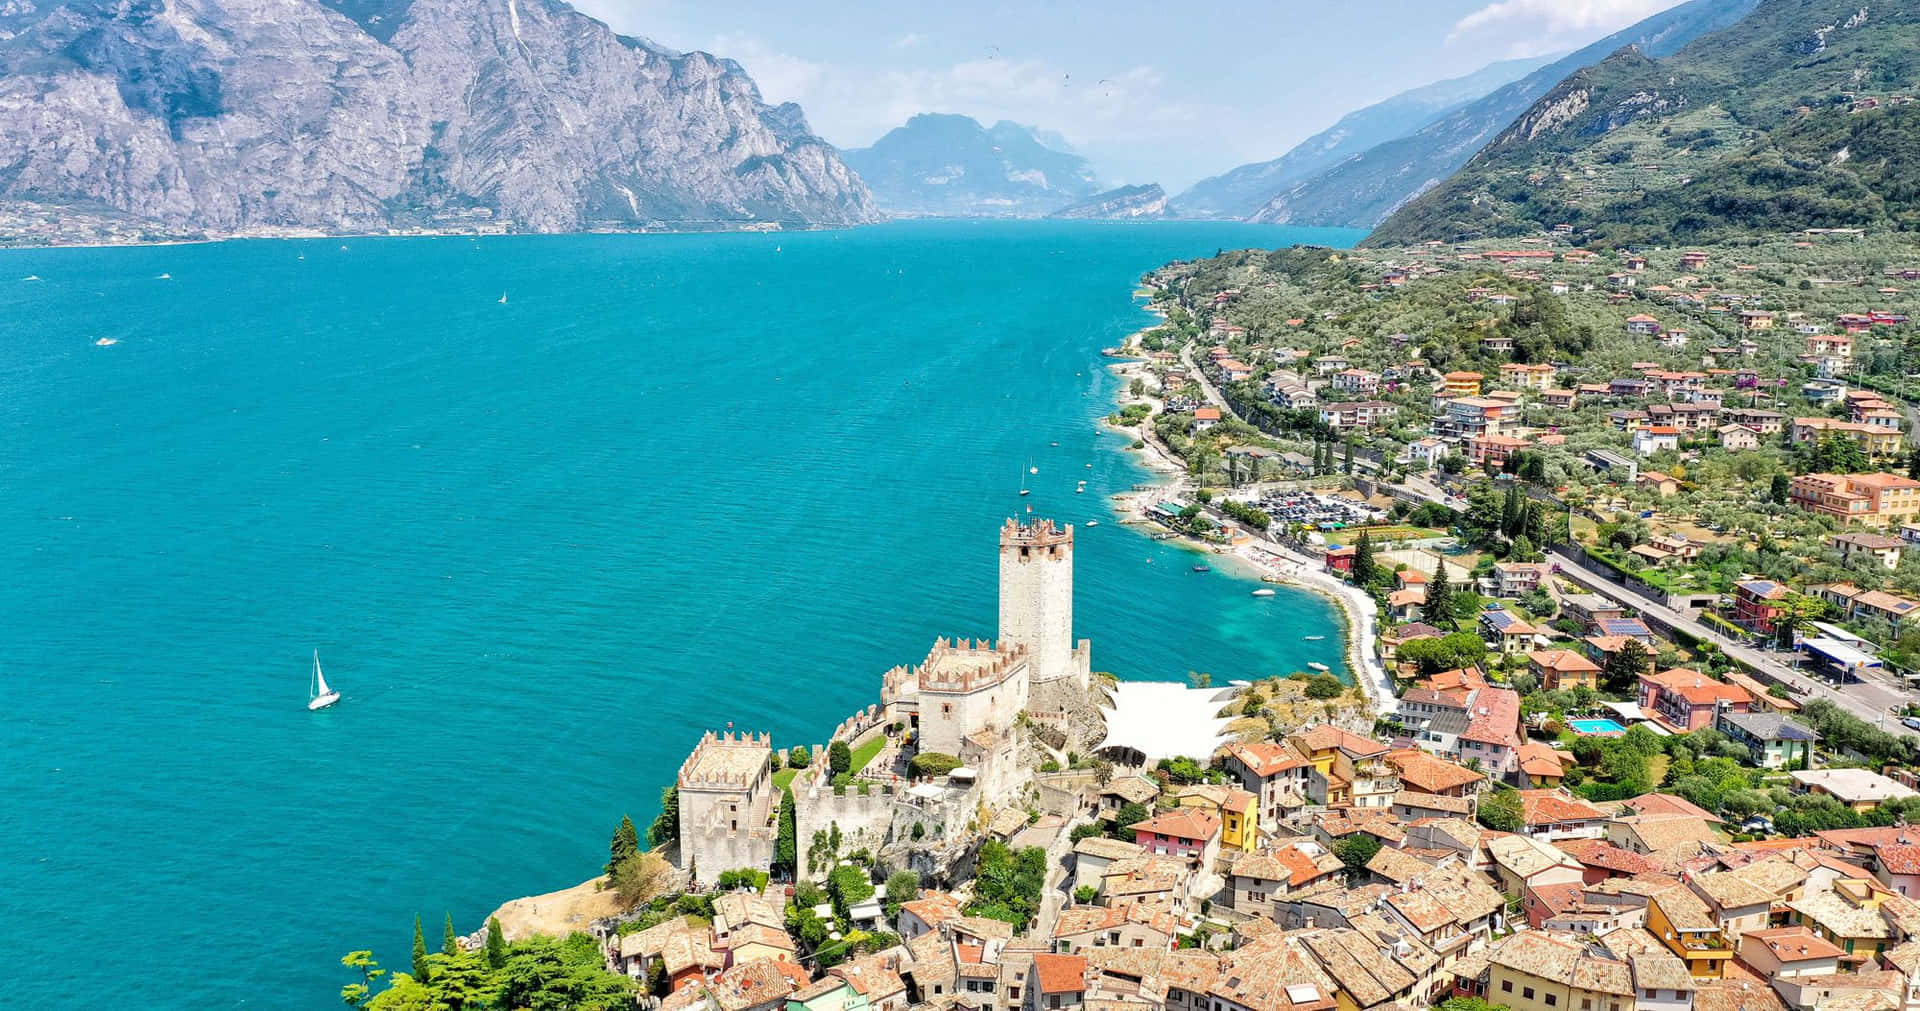 Sirmione Byen af Lago di Garda er motiveret på dette tapet. Wallpaper